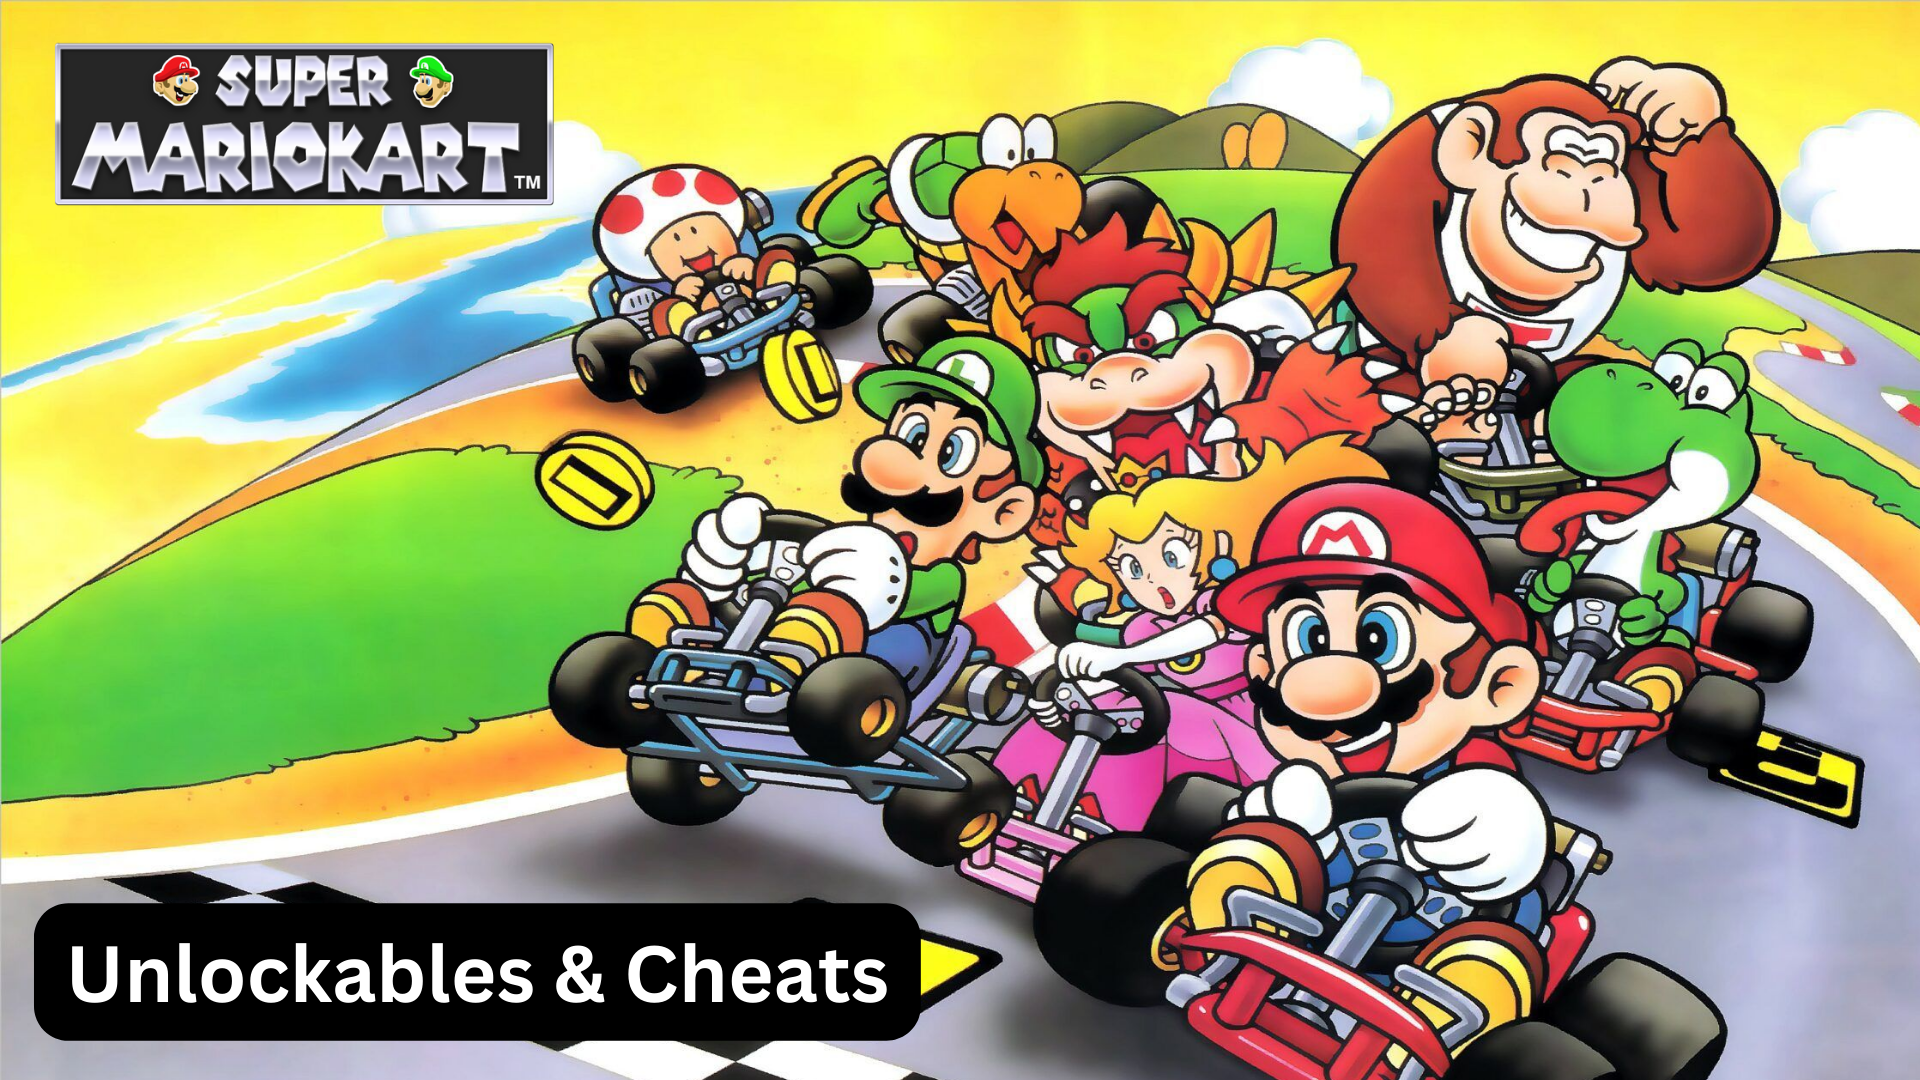 Super Mario Kart Unlockables & Cheats